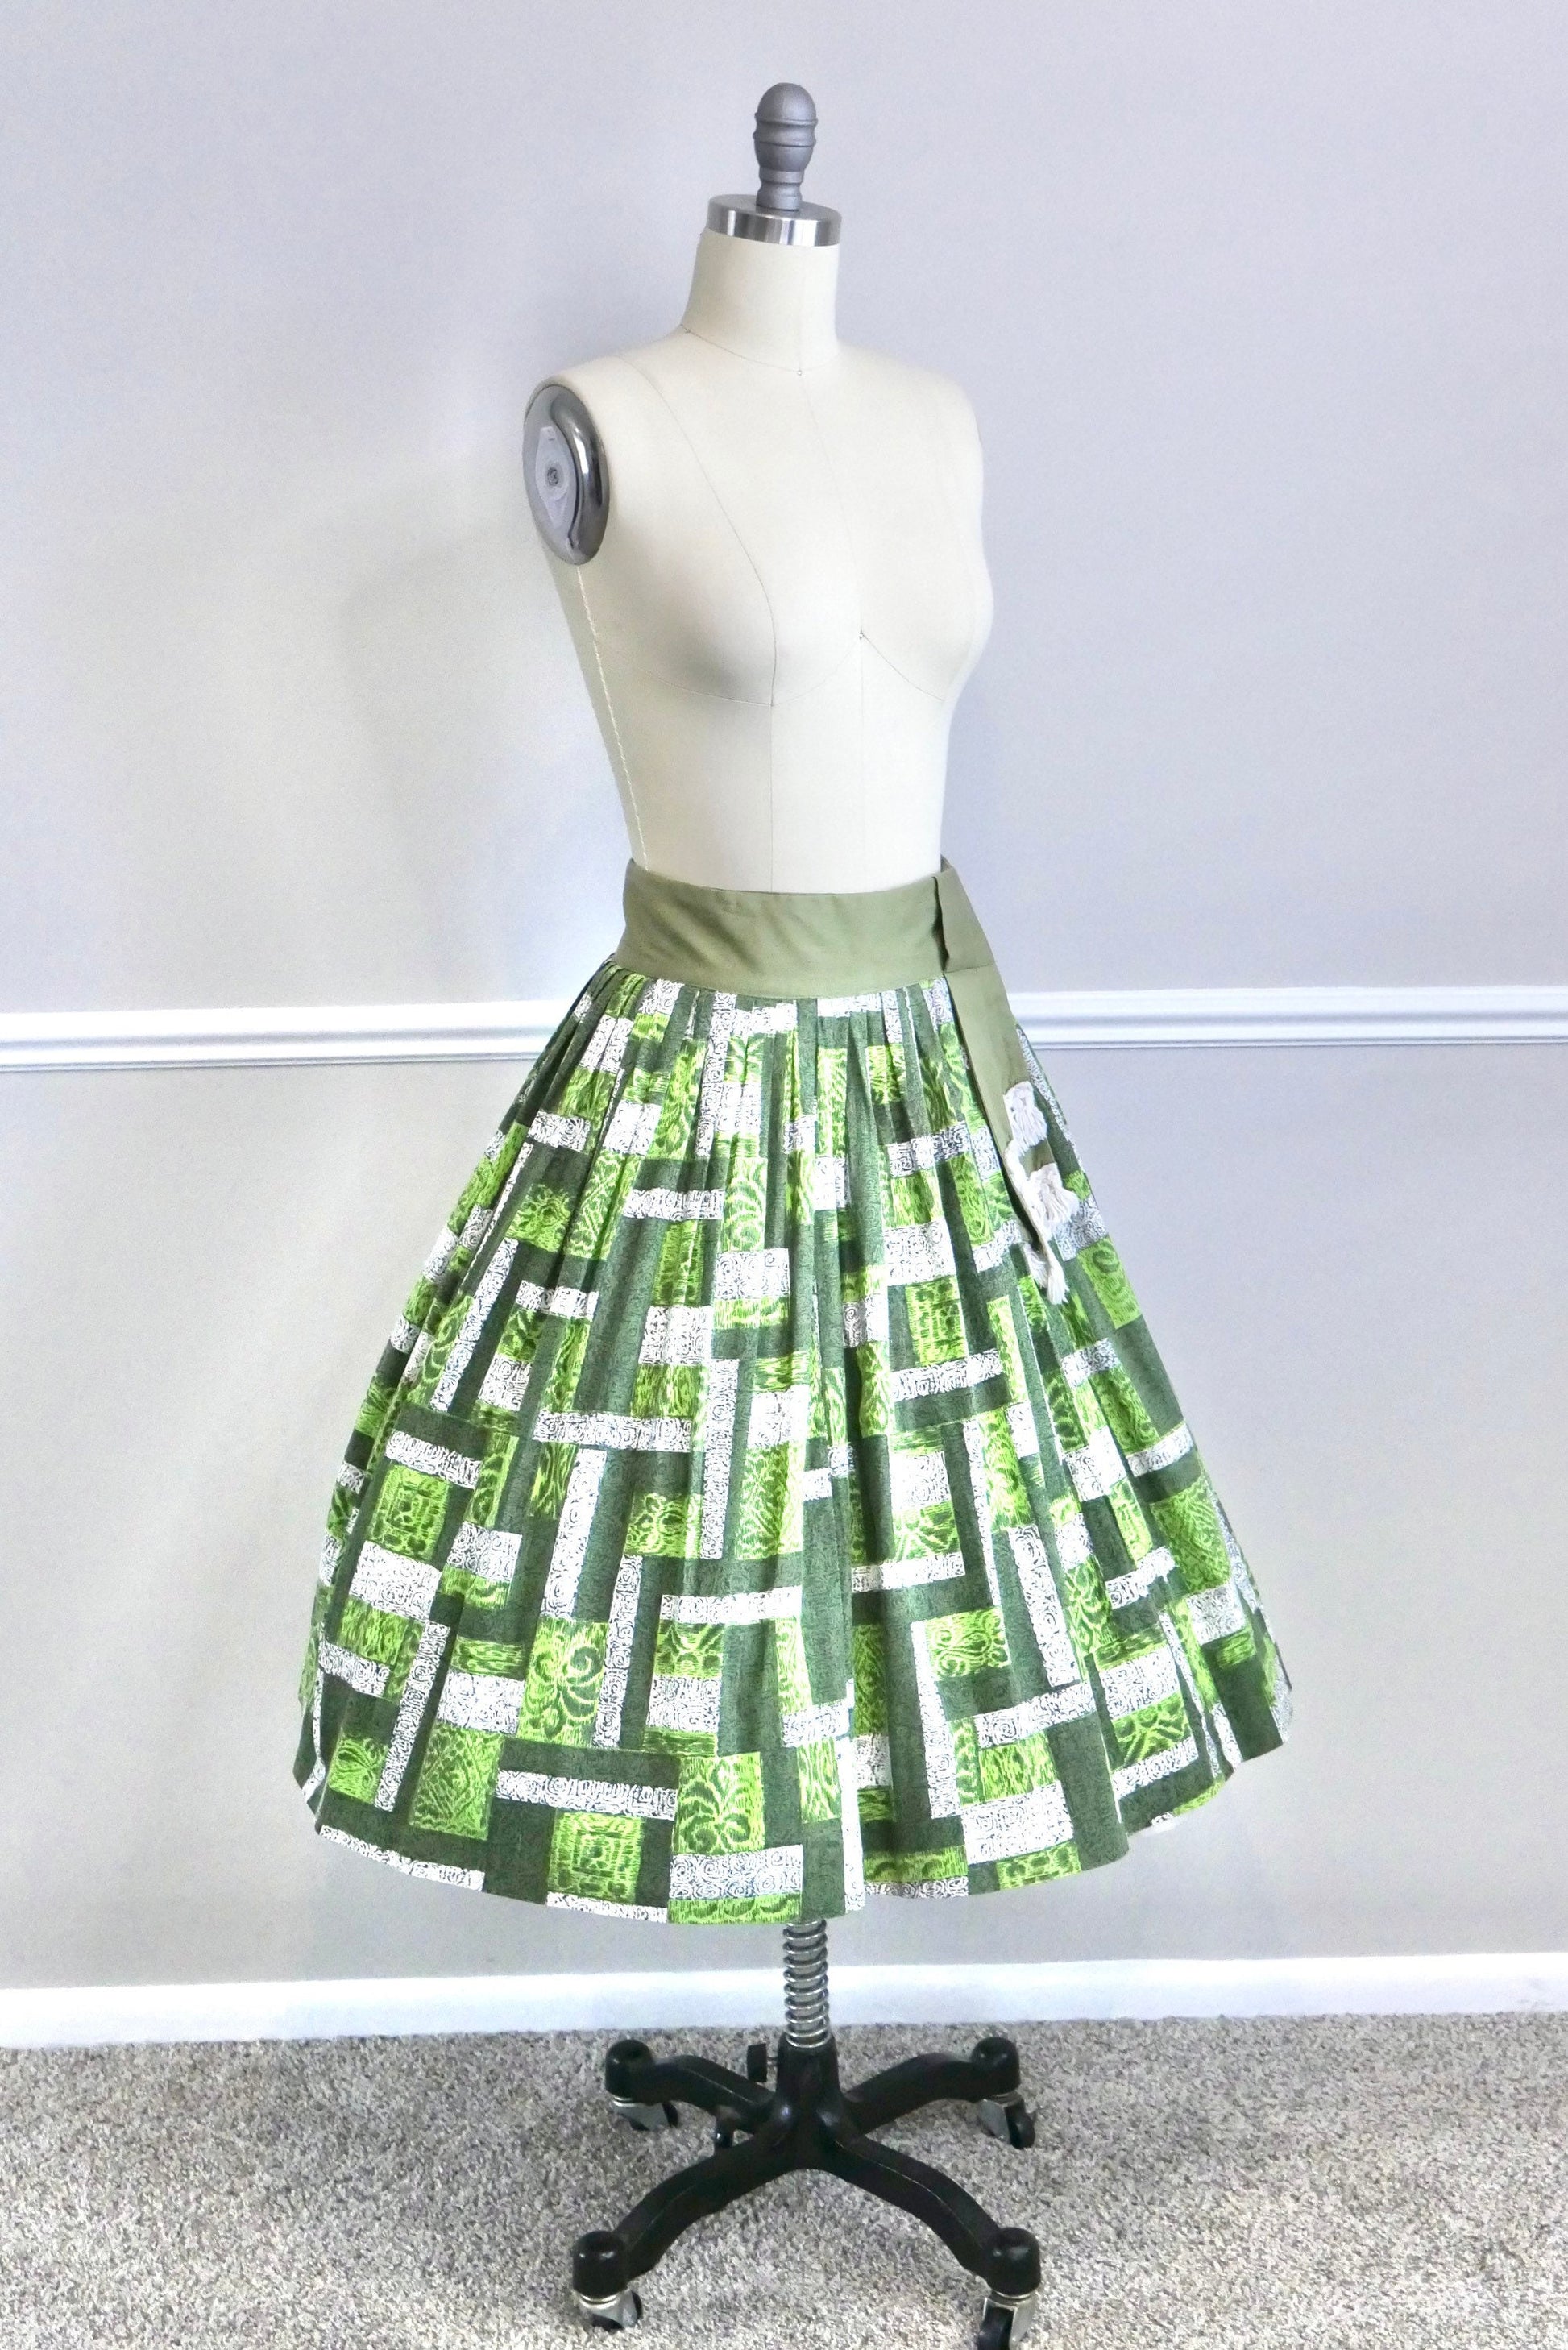 Vintage 1950s Novelty Print Circle Skirt / 50s retro kelly green full skirt Size S